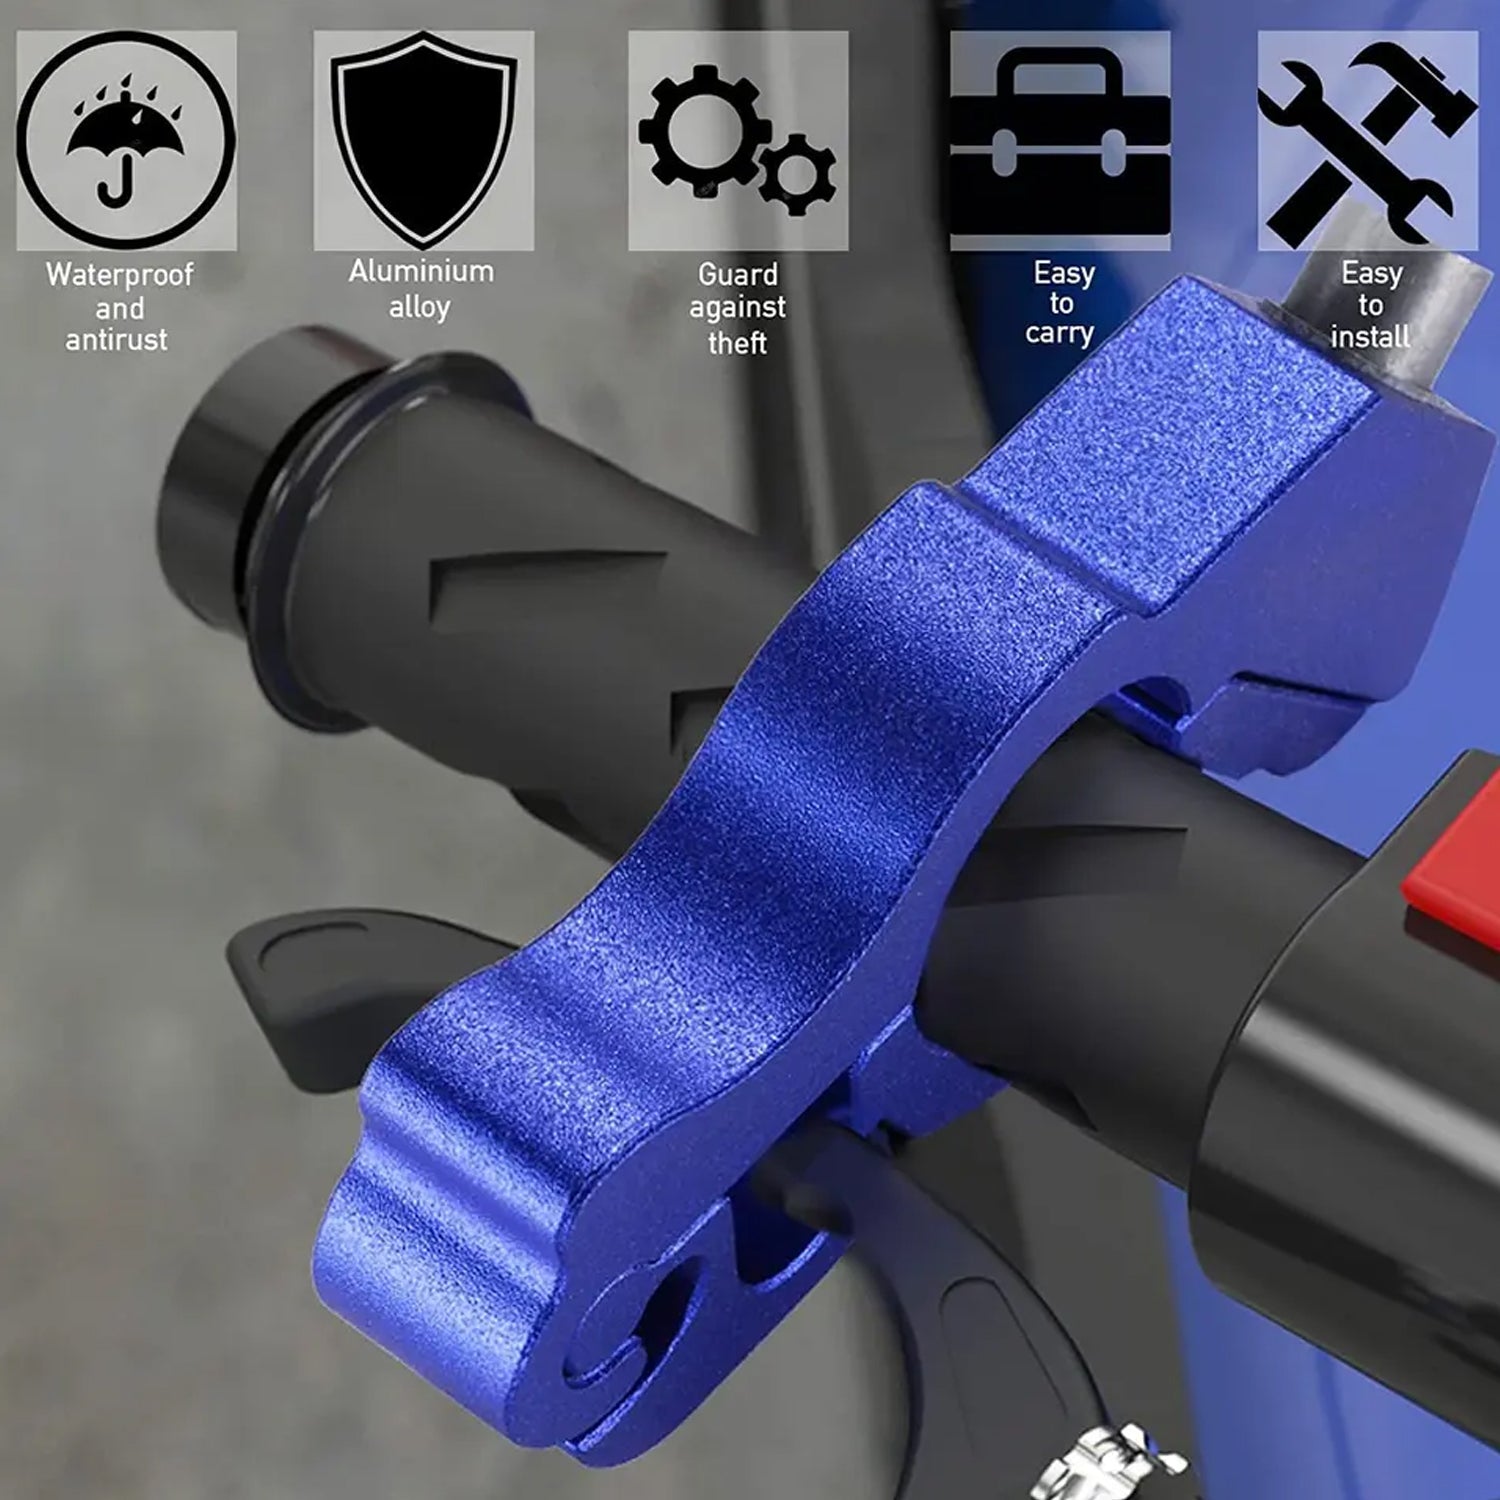 7523 Motorcycle Grip Lock Universal Motorcycle Handlebar Throttle Grip Security Lock JK Trends